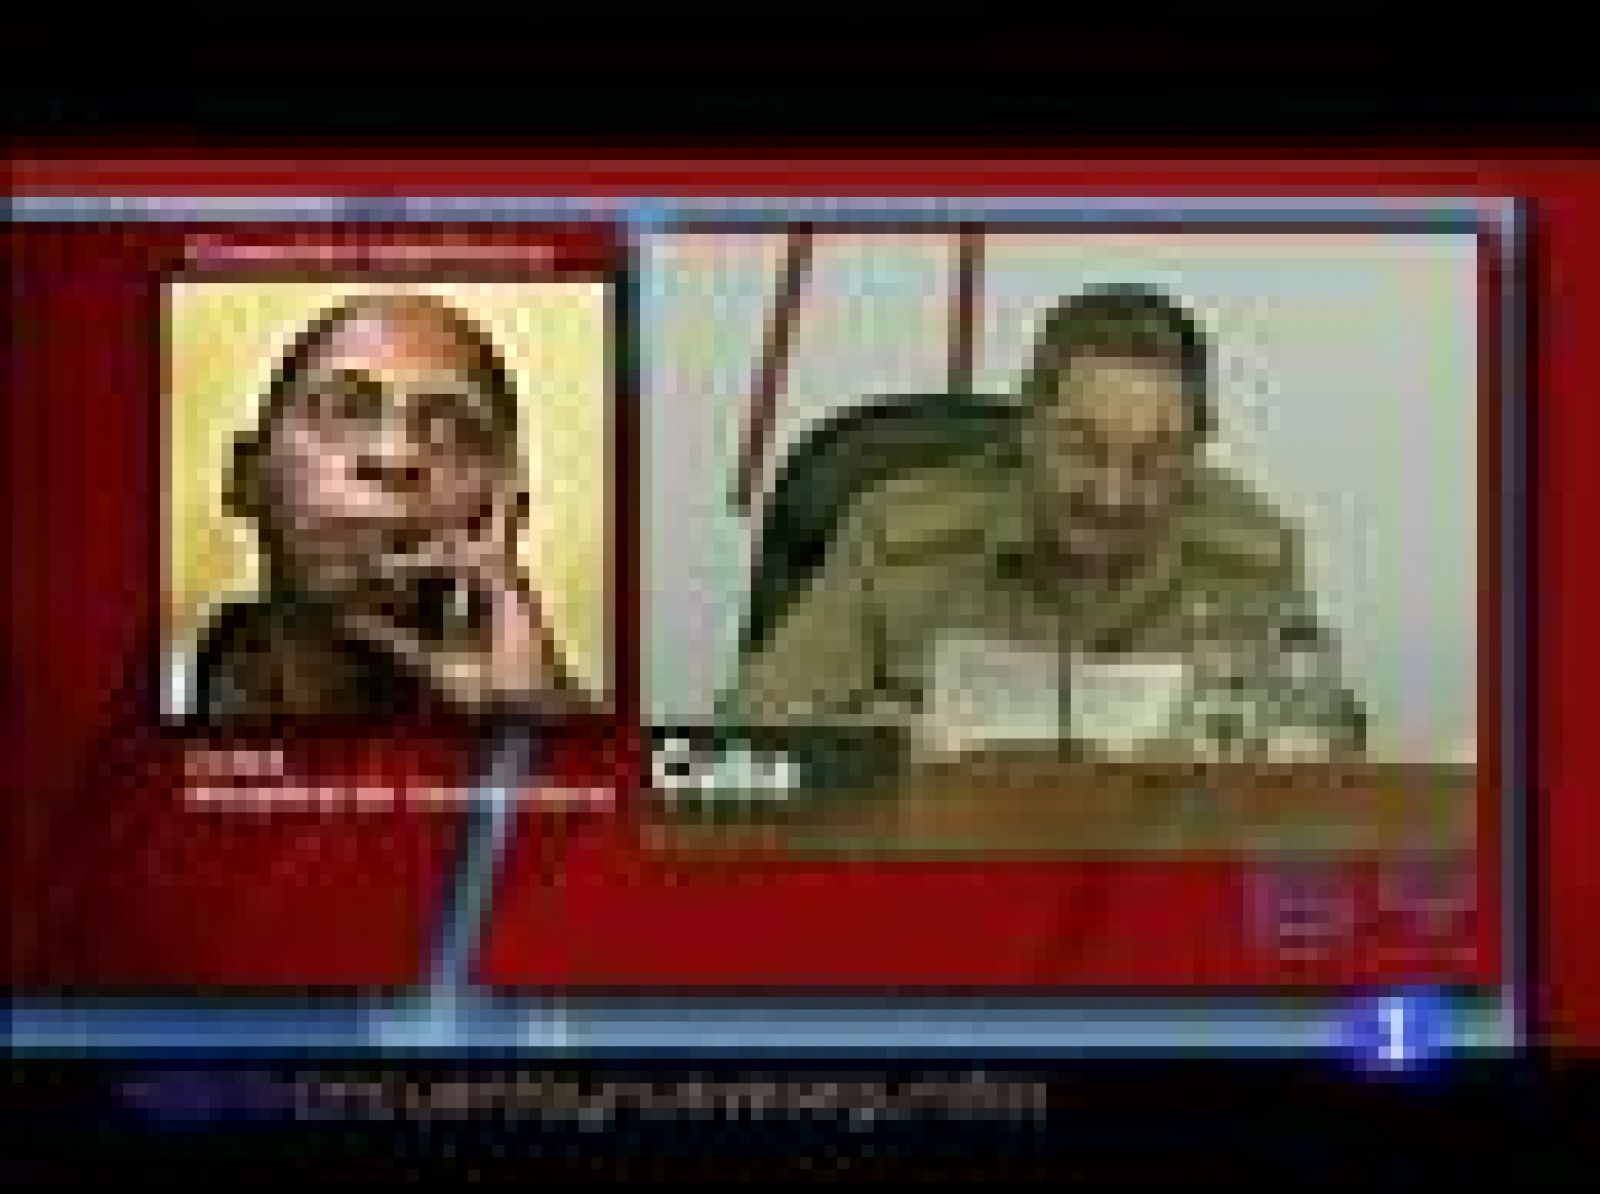   Entrevista telefónica con el opositor cubano, Guillermo Fariñas, en el programa 59 segundos